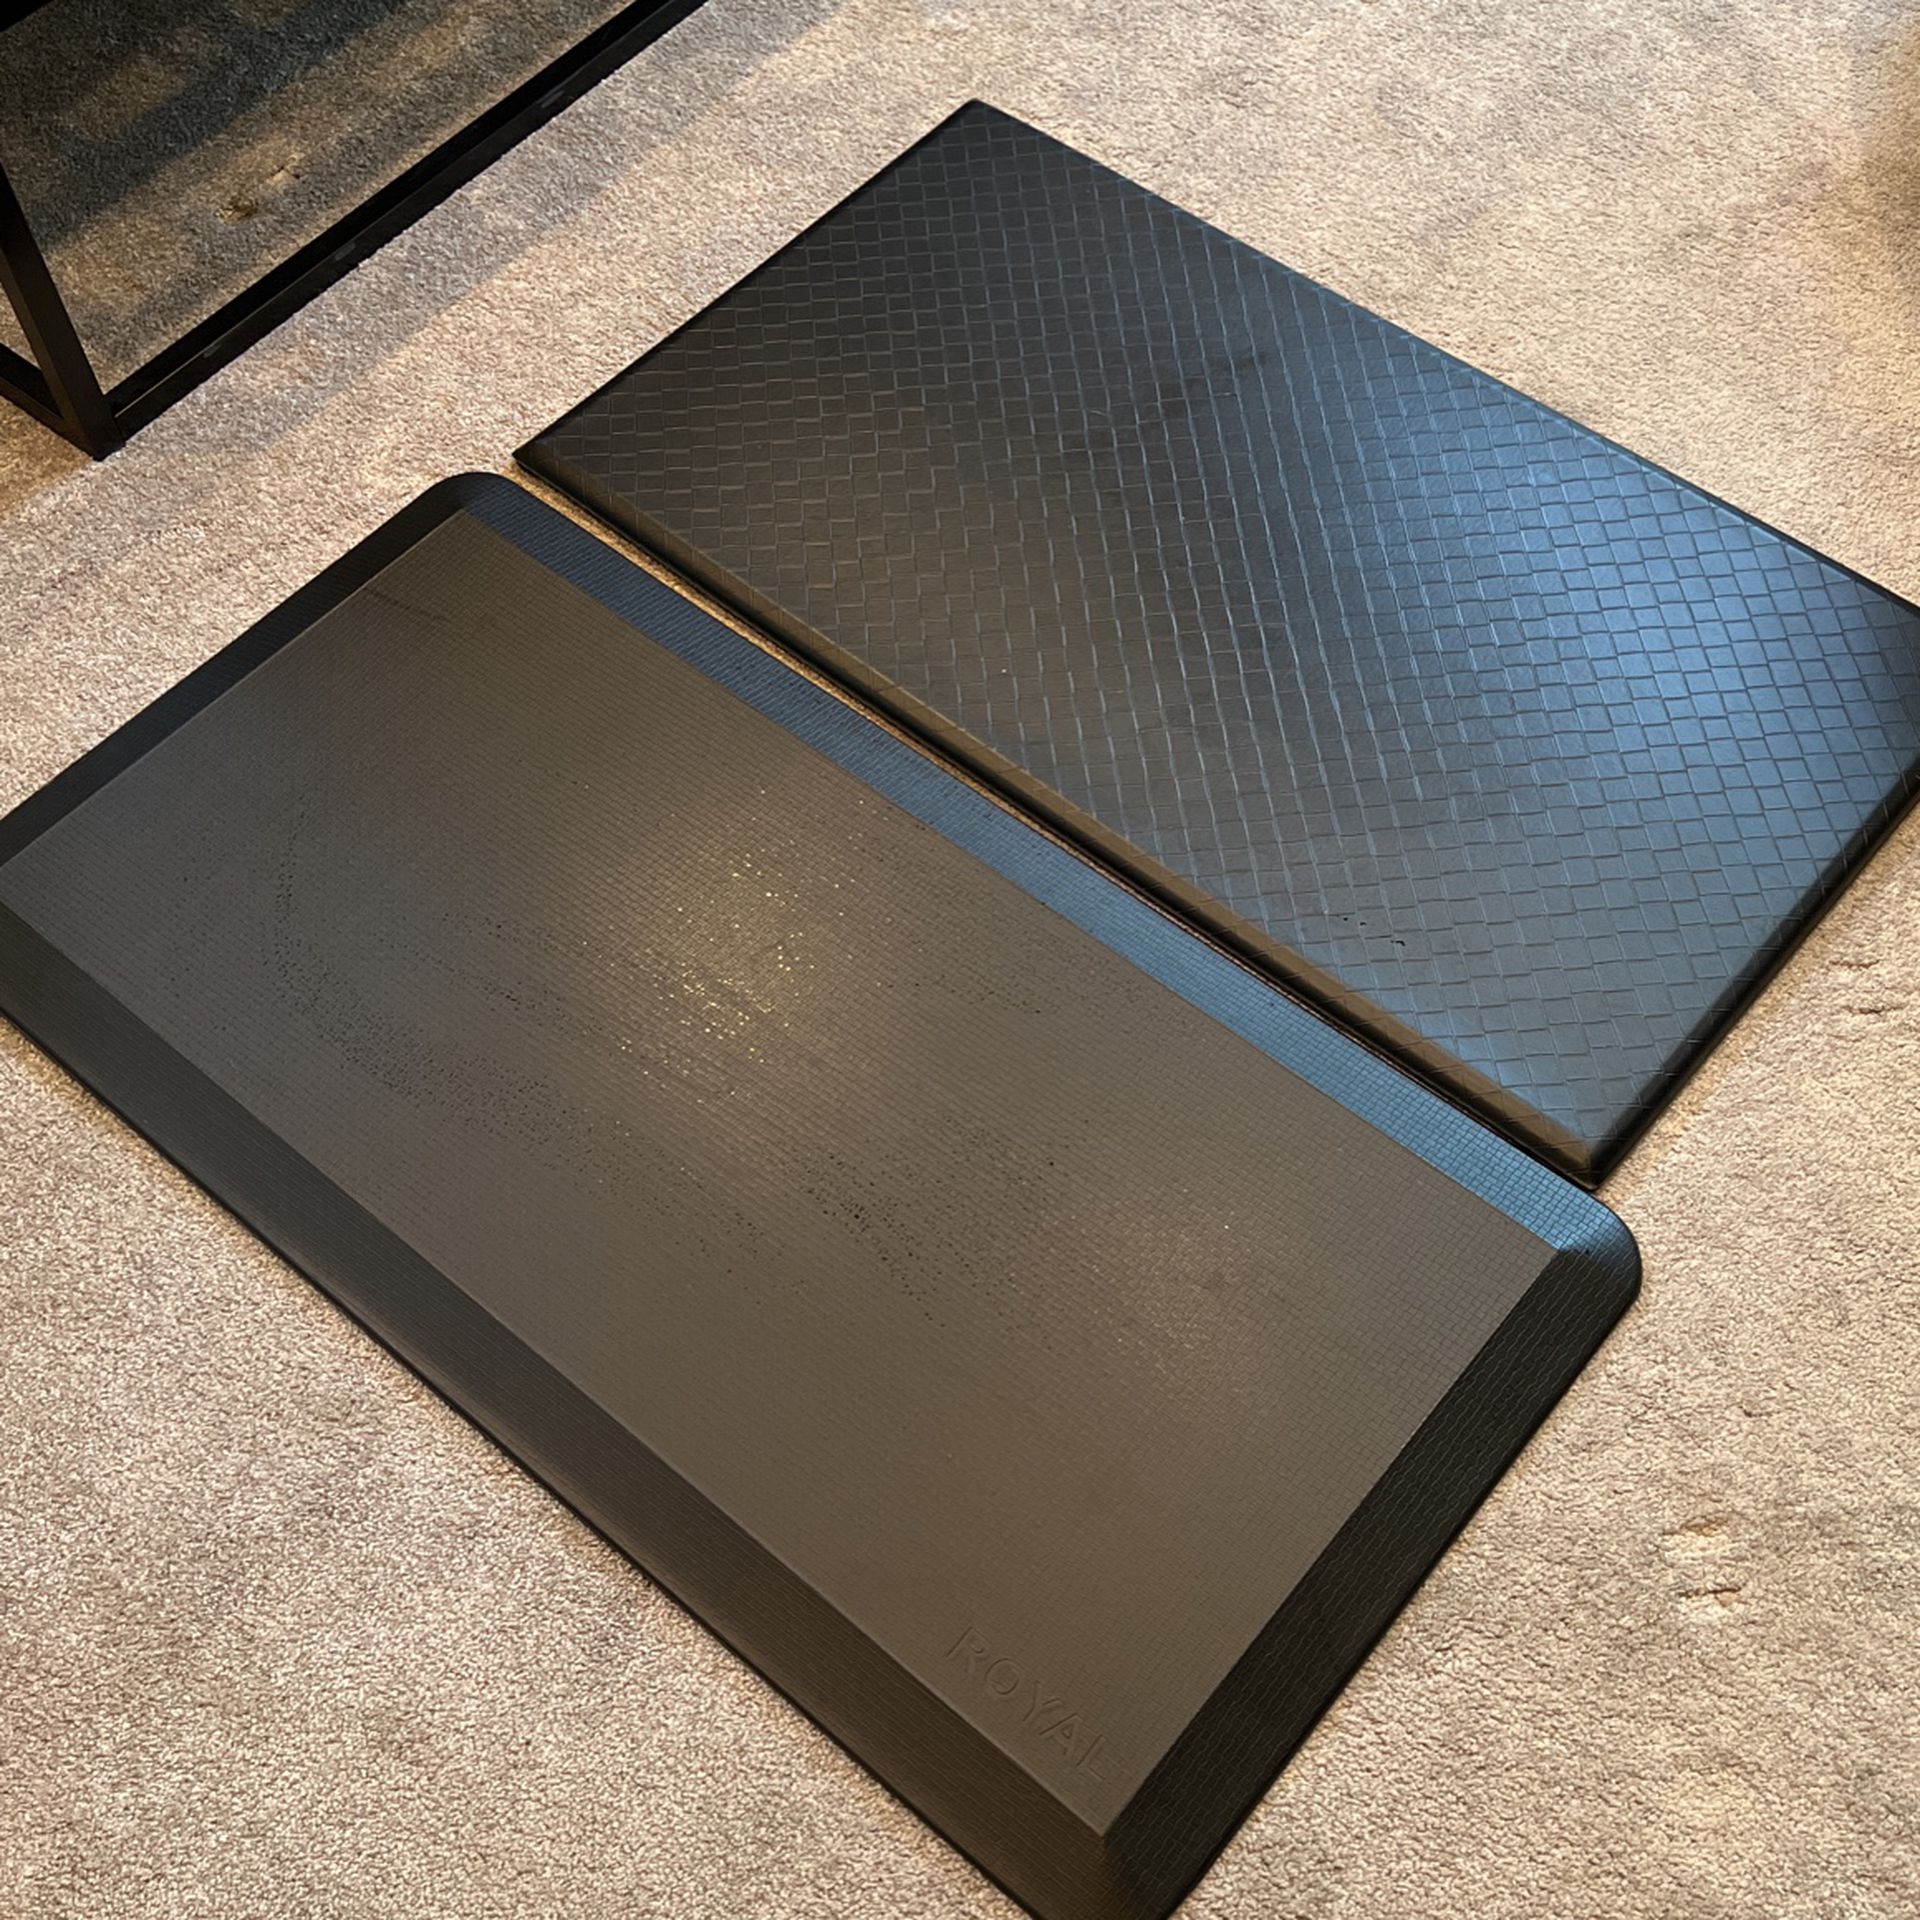 Free Standing desk mats